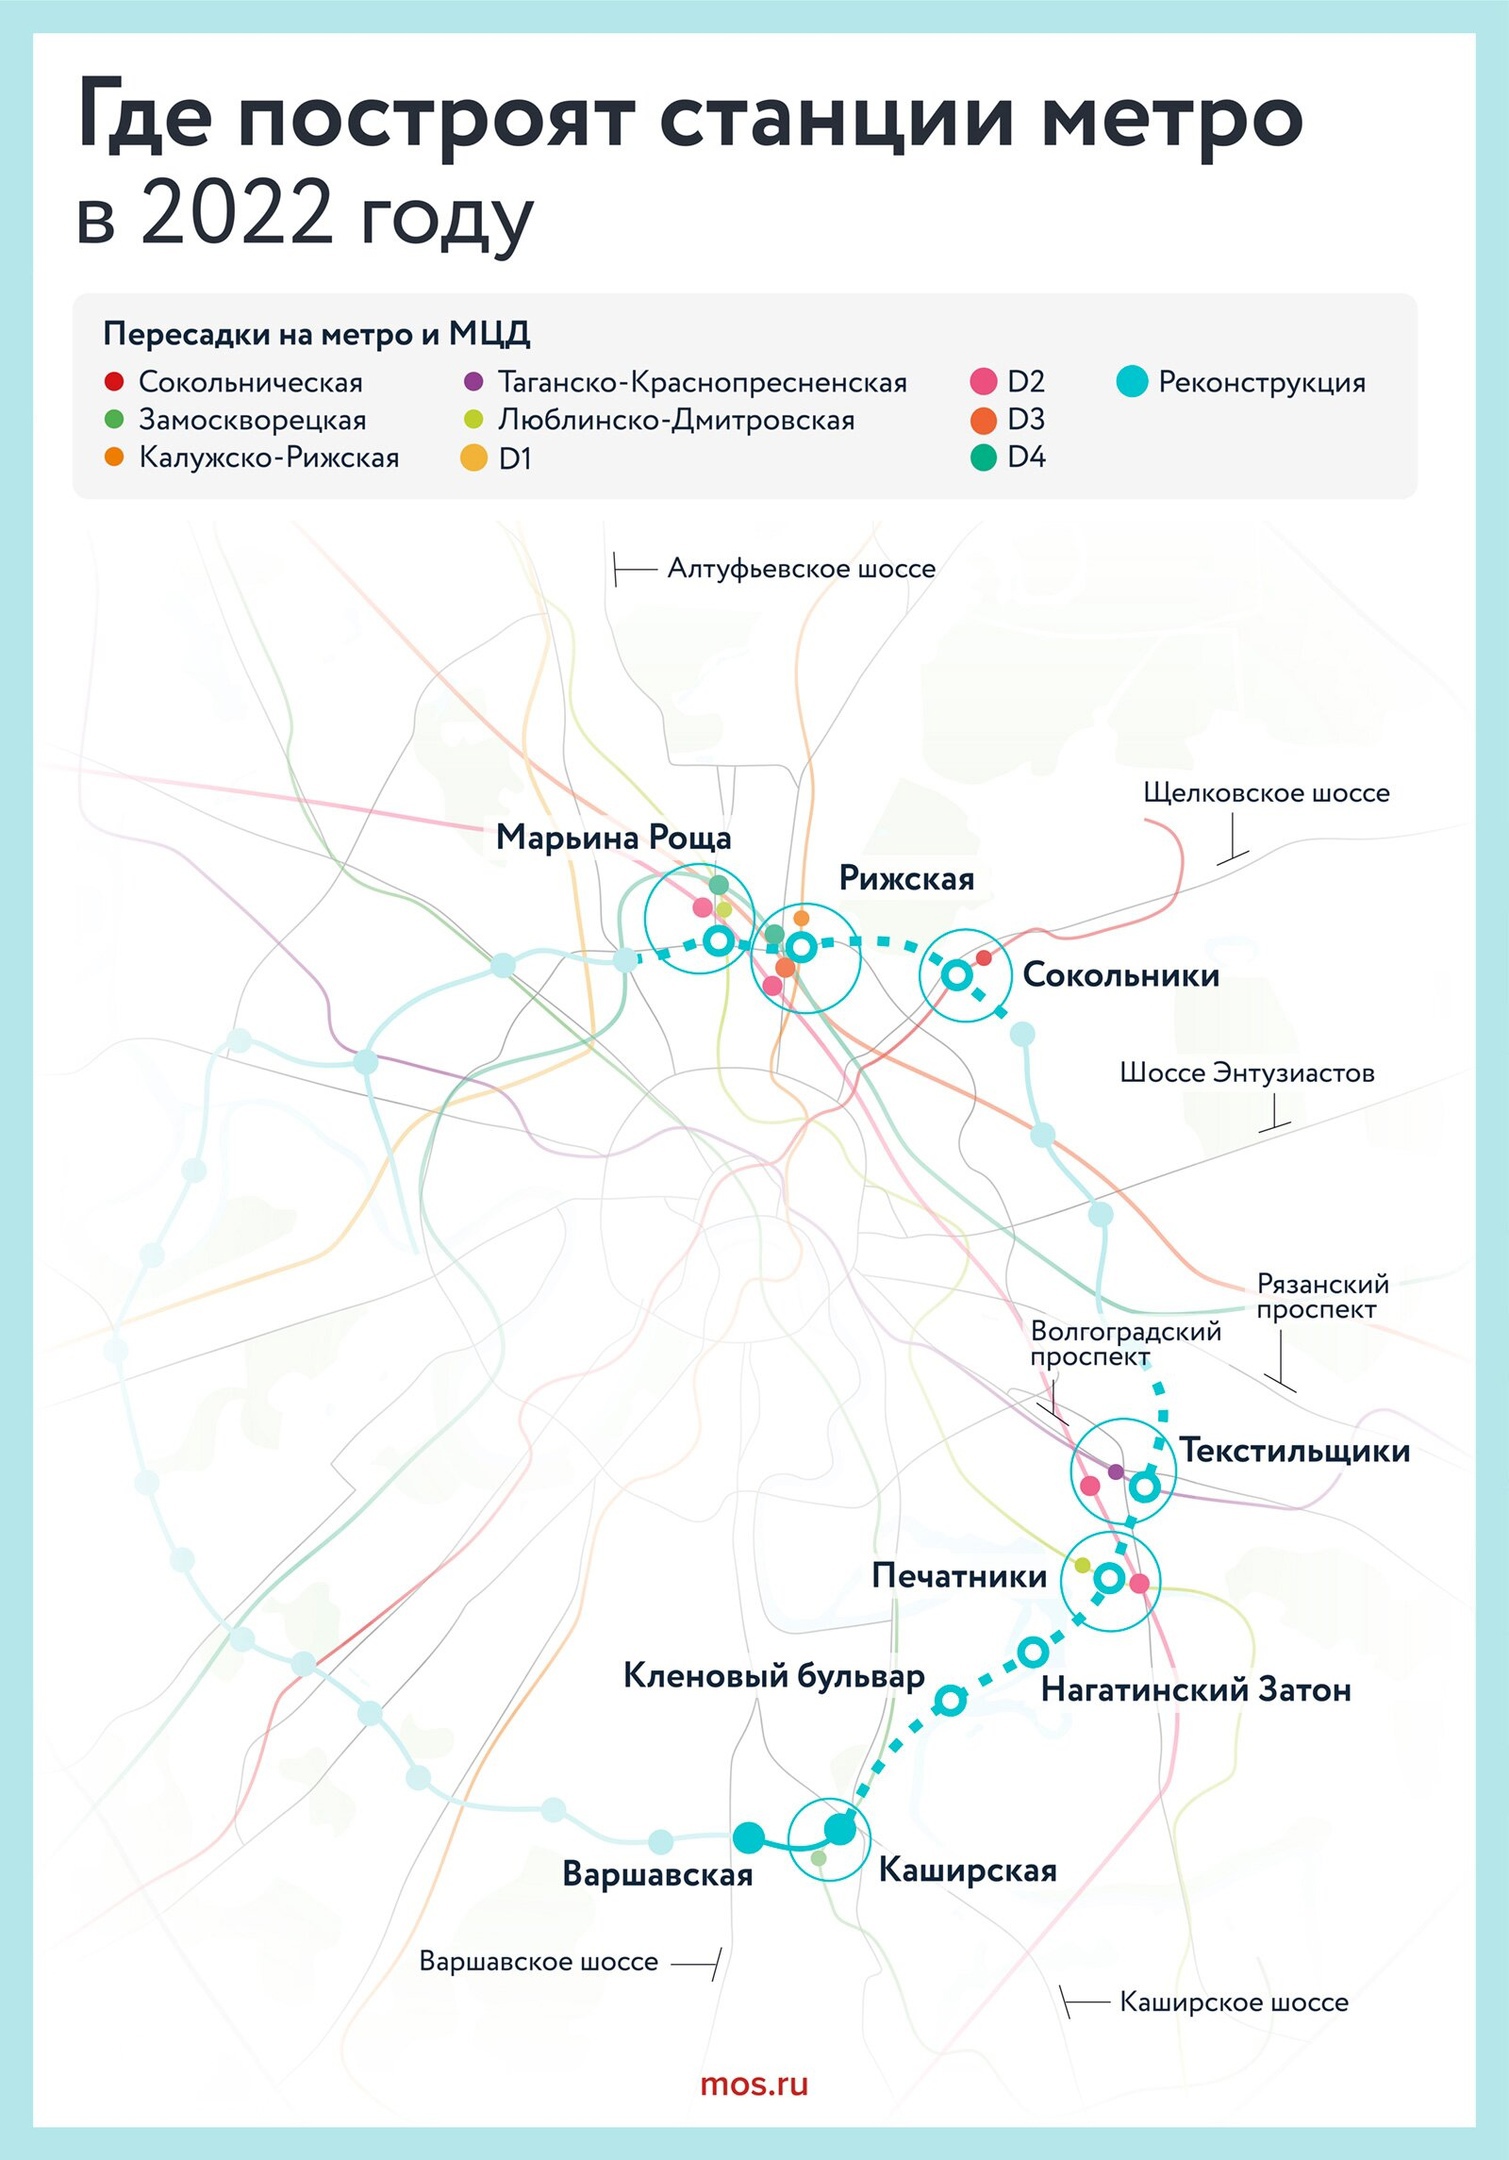 метро москвы новые станции